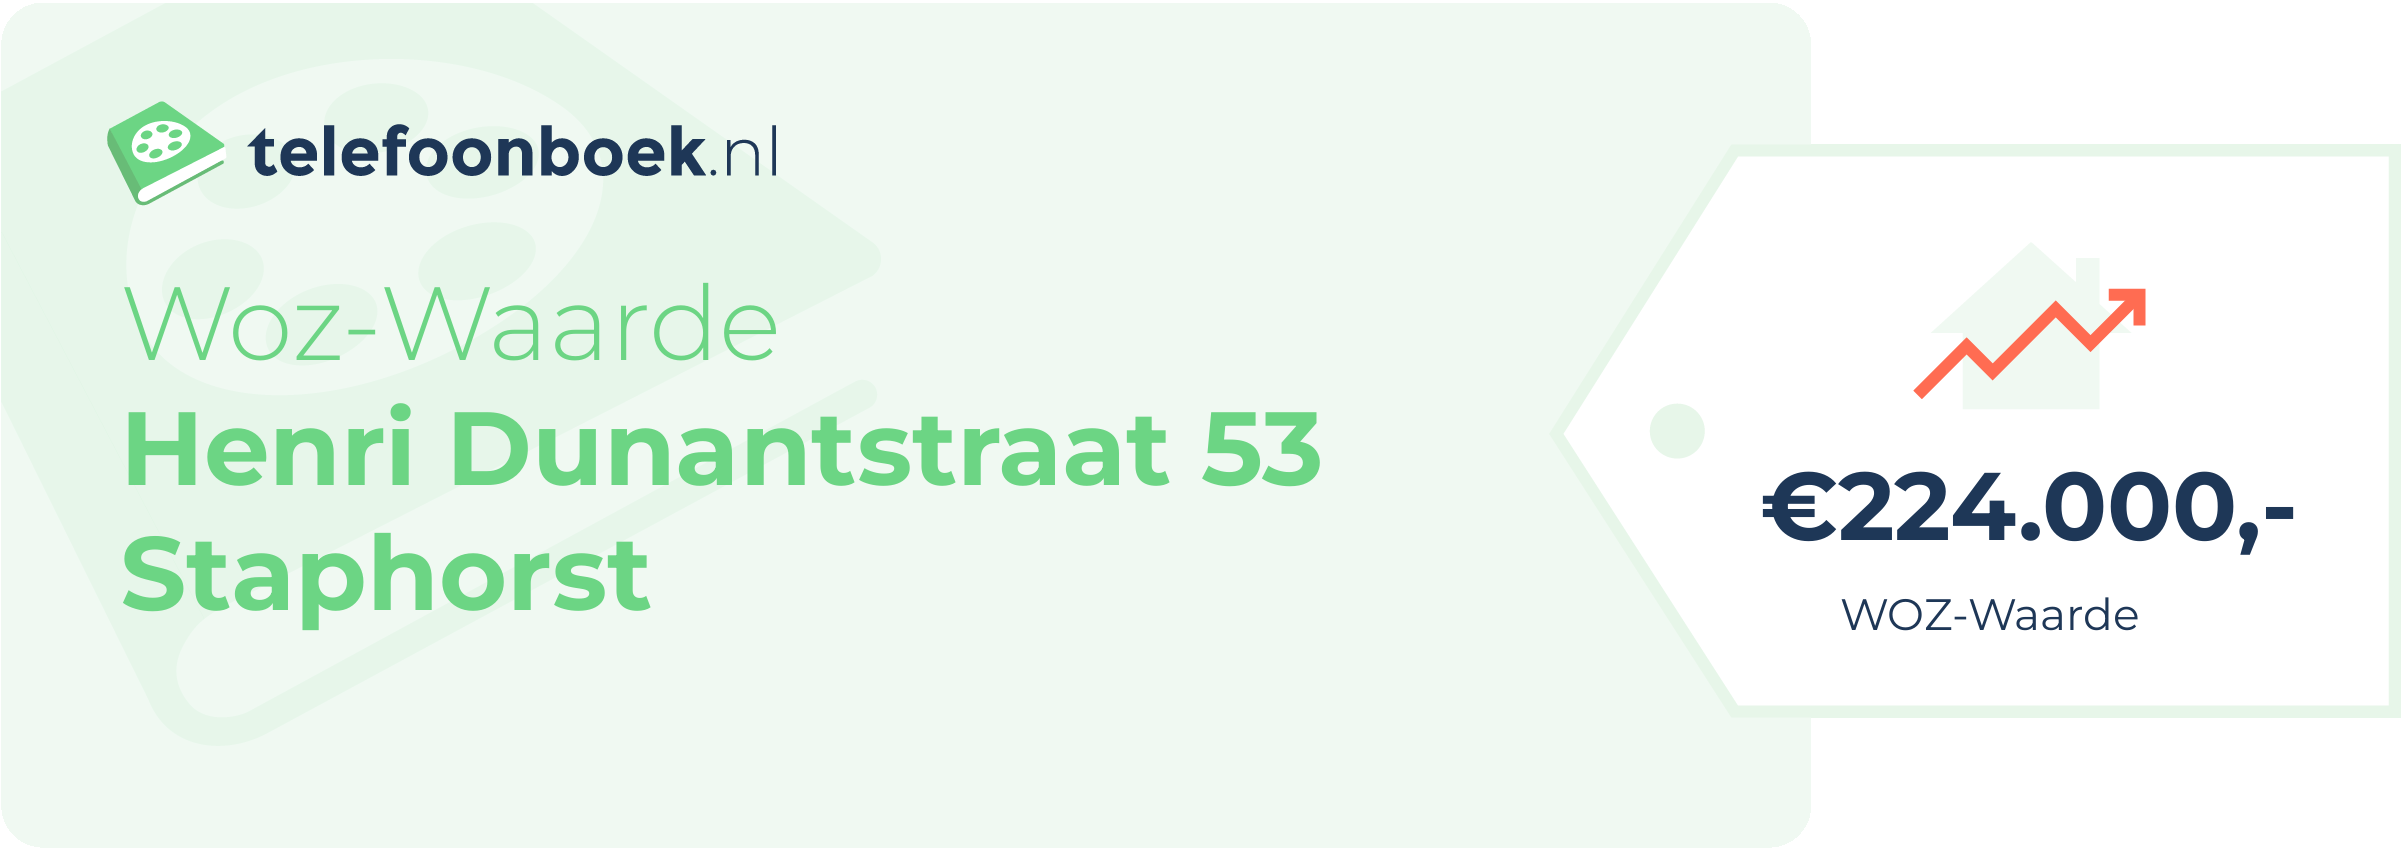 WOZ-waarde Henri Dunantstraat 53 Staphorst